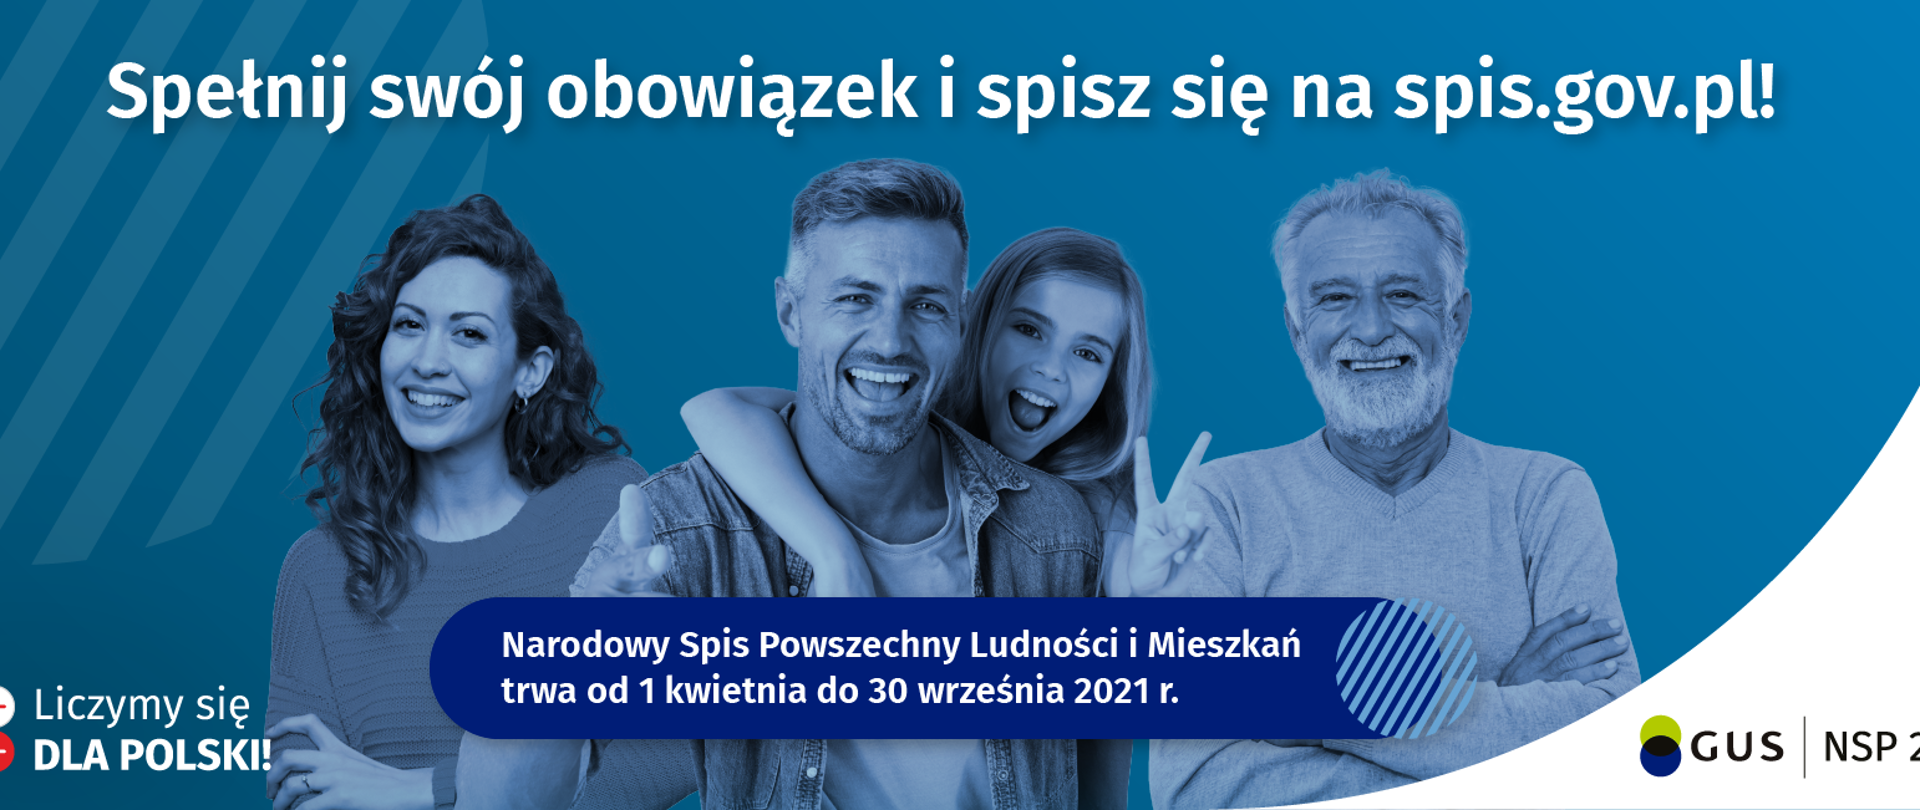 Na niebieskim tle stoją cztery osoby. Od lewej kobieta, mężczyzna, dziewczynka oraz pan w starszym wieku. Na górze umieszczony jest biały napis "Spełnij swój obowiązek i spisz się na spis.gov.pl!". W lewym dolnym rogu Widoczny napis Liczymy się dla Polski. W prawym dolnym rogu widoczny napis "GUS NSP 2021". Na dole zdjęcia na granatowym tle widoczny napis "Narodowy Spis Powszechny Ludności i Mieszkań trwa od 1 kwietnia do 30 września 2021r."